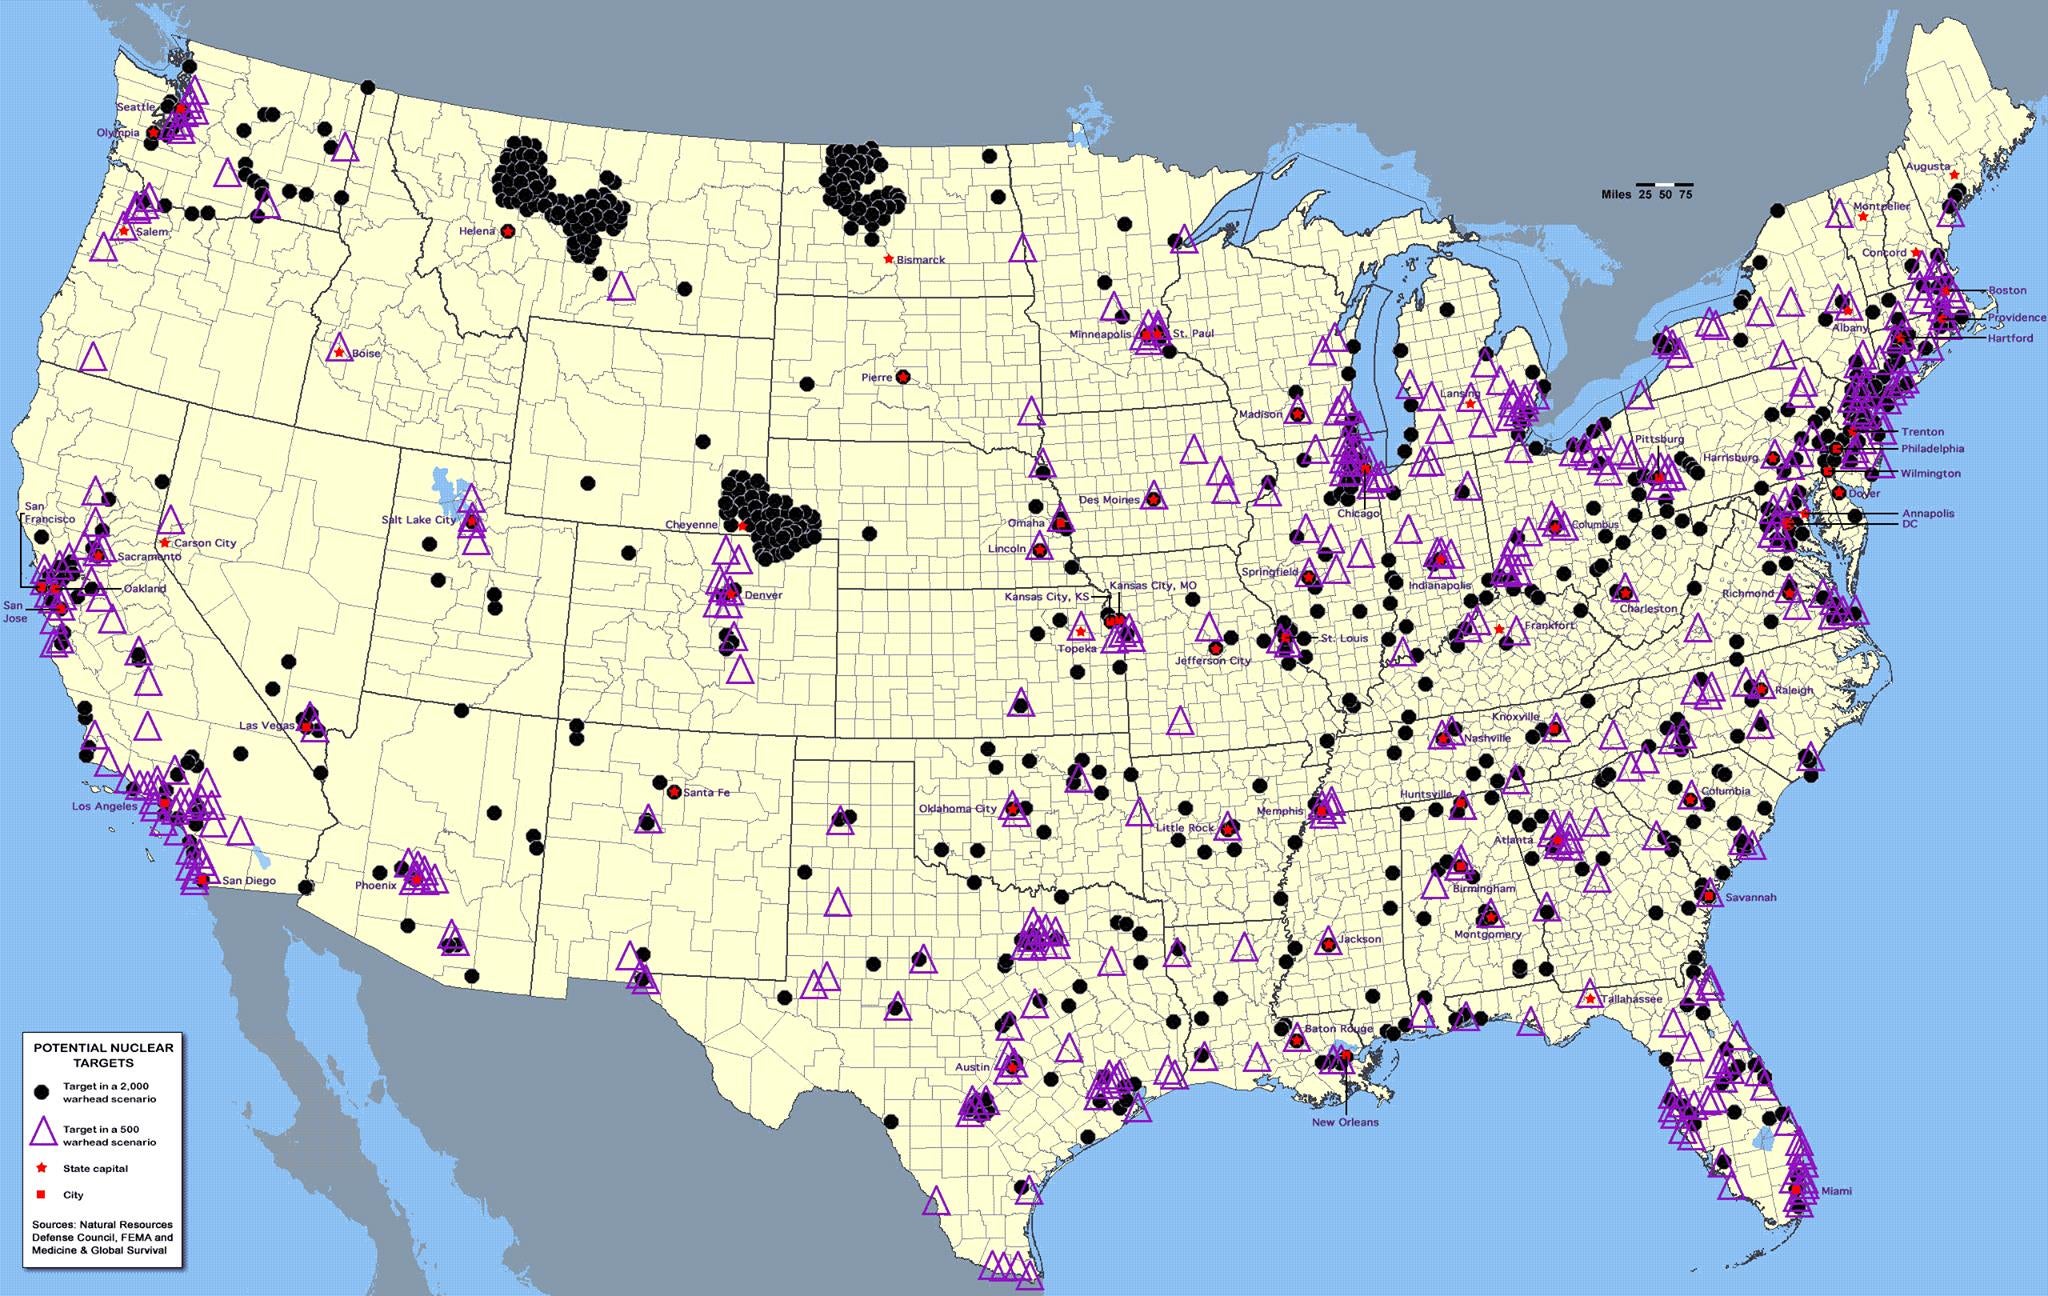 El mapa se publicó por primera vez en 2015 por la Agencia Federal para el Manejo de Emergencias (’FEMA’ por sus siglas en inglés)